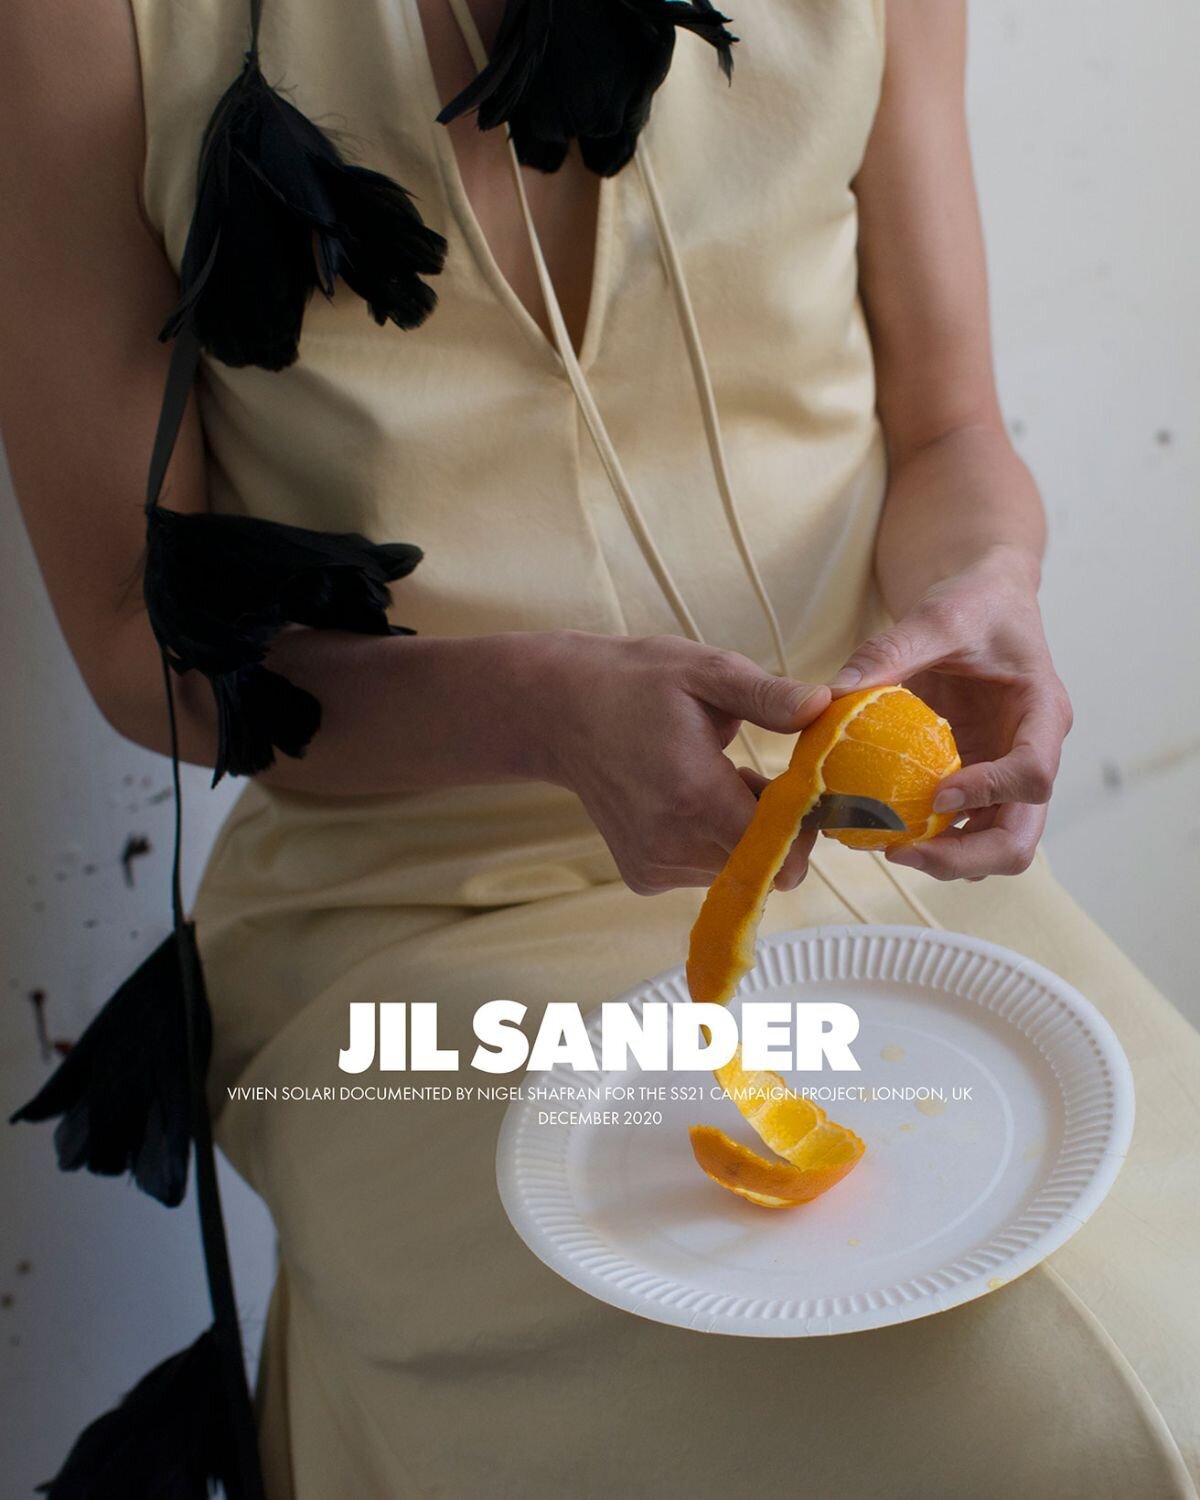 Vivien-Solari-by-Nigel-Shafran-for-Jil-Sander-Spring-Summer-2021-Ad-Campaign-1.jpg